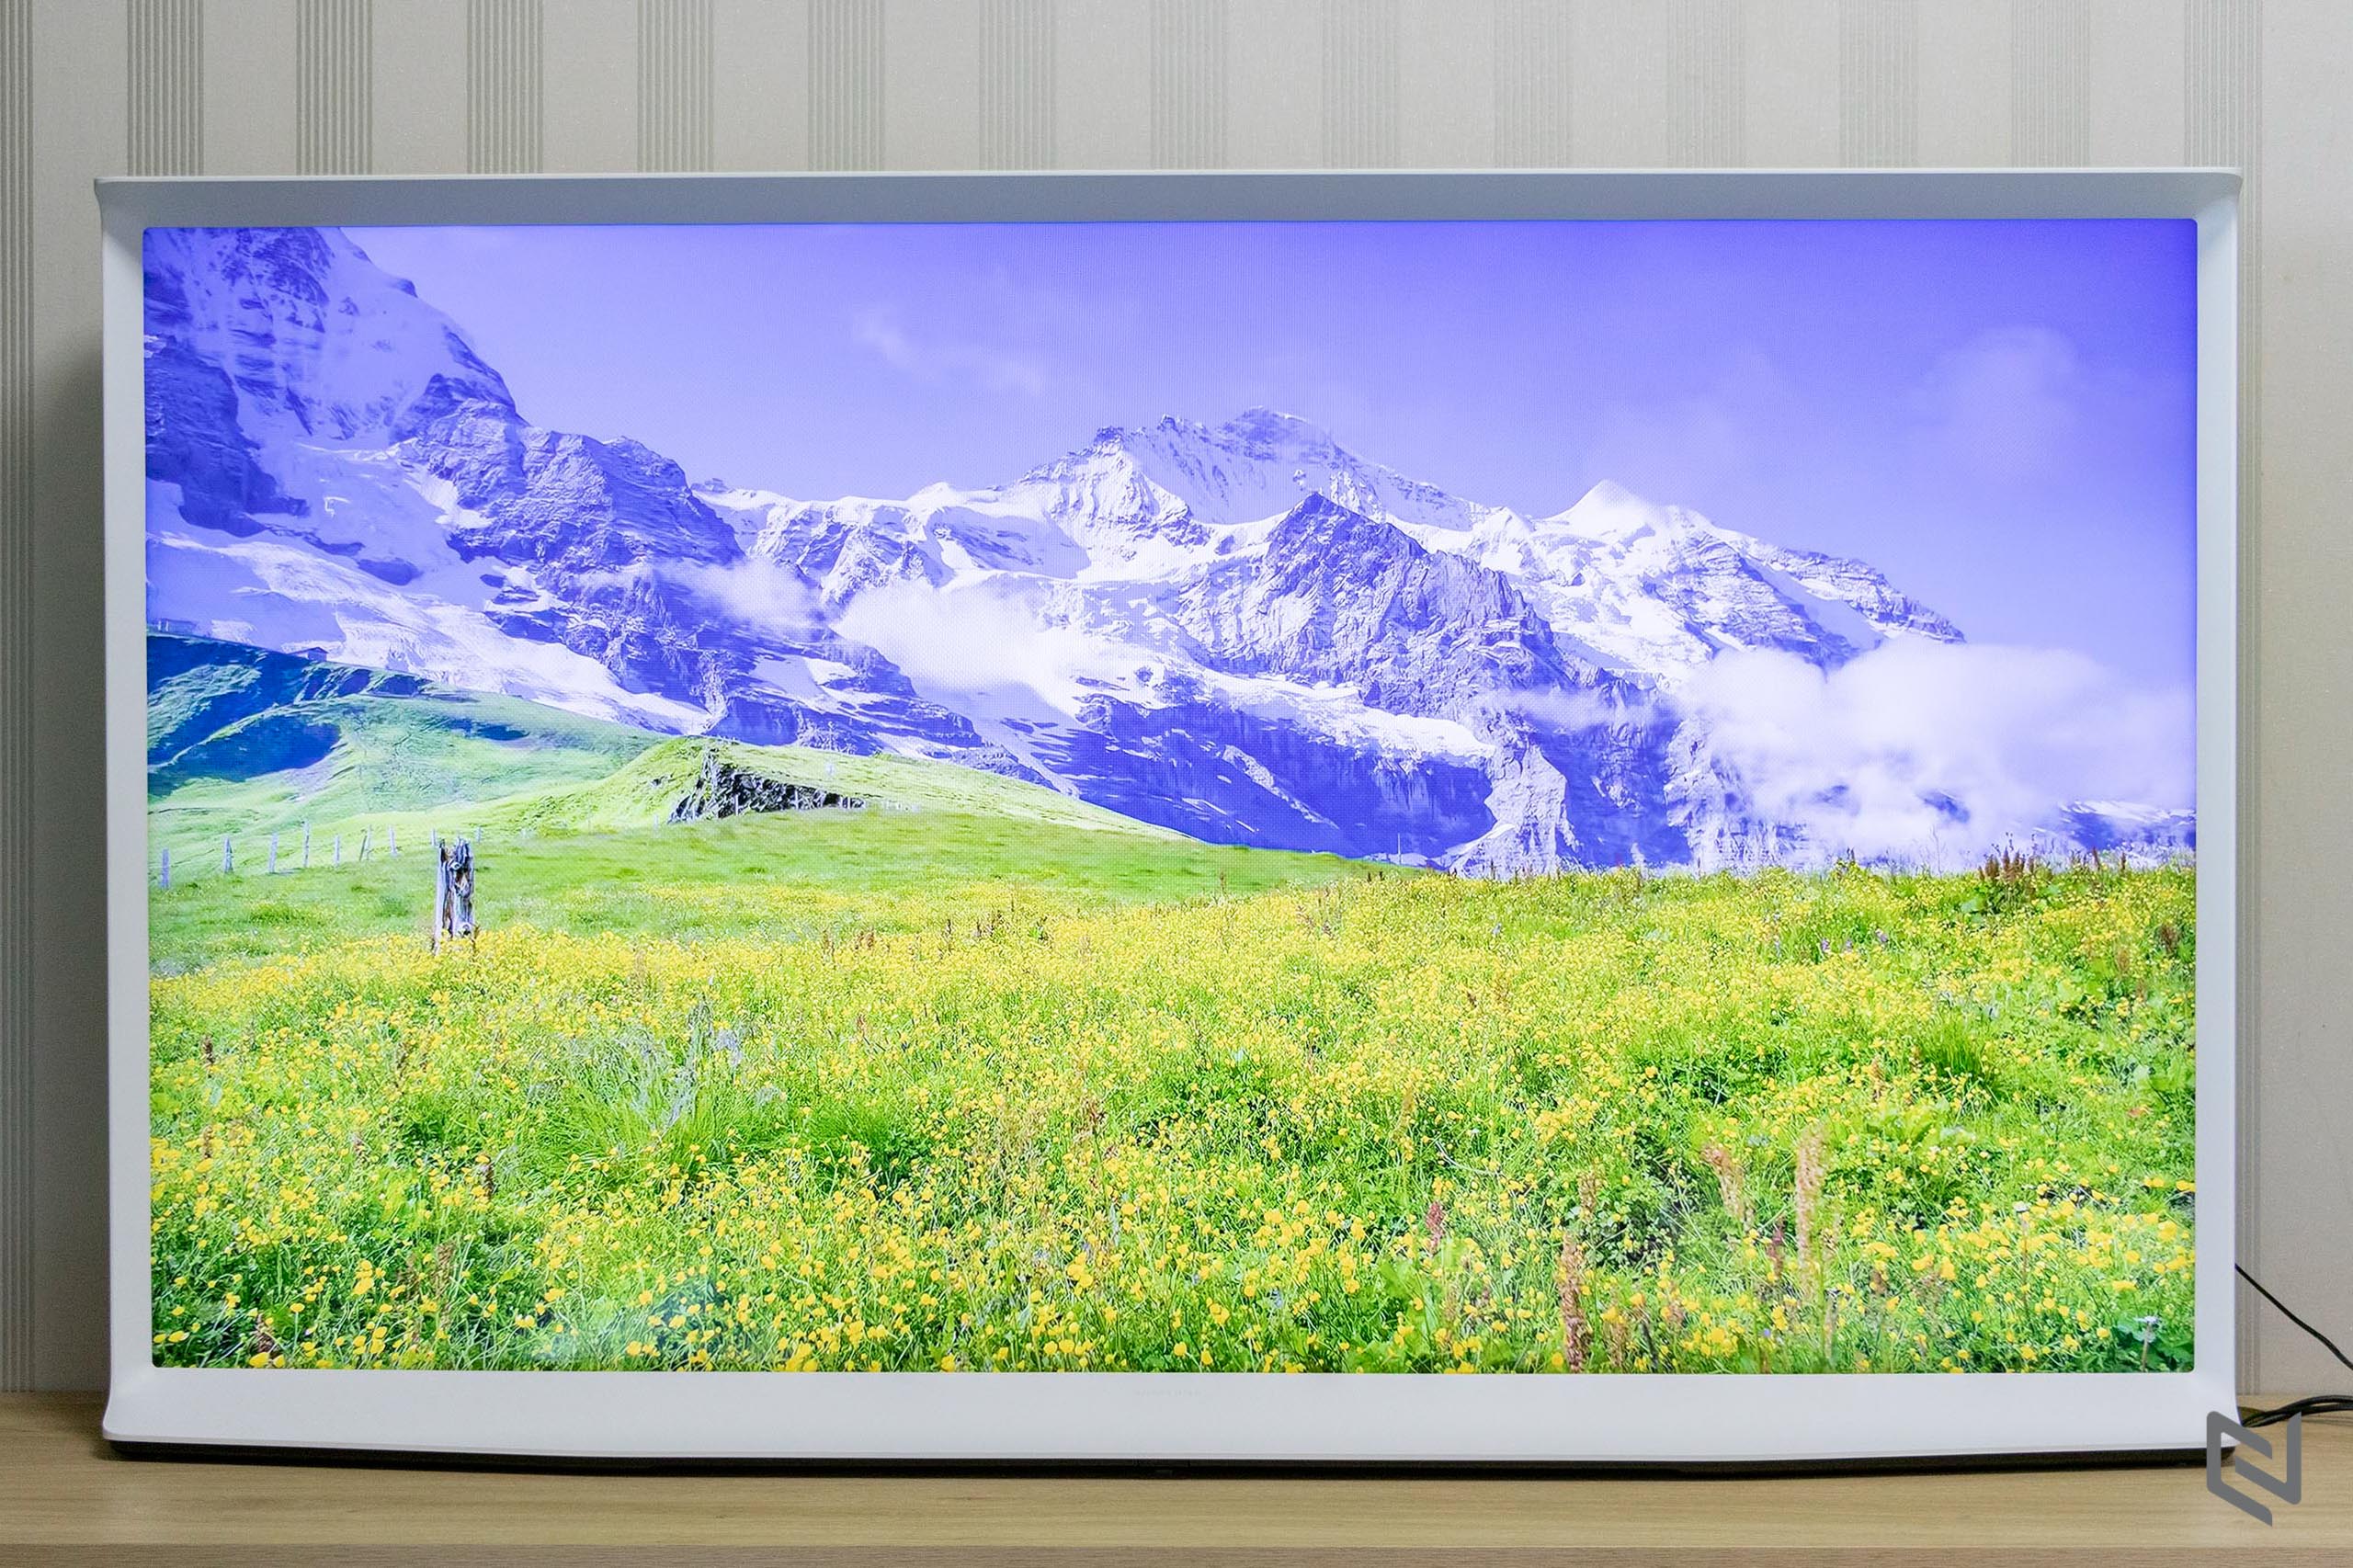 Trải nghiệm TV Samsung The Serif: Đẹp ở mọi góc nhìn, hình ảnh và âm thanh ấn tượng